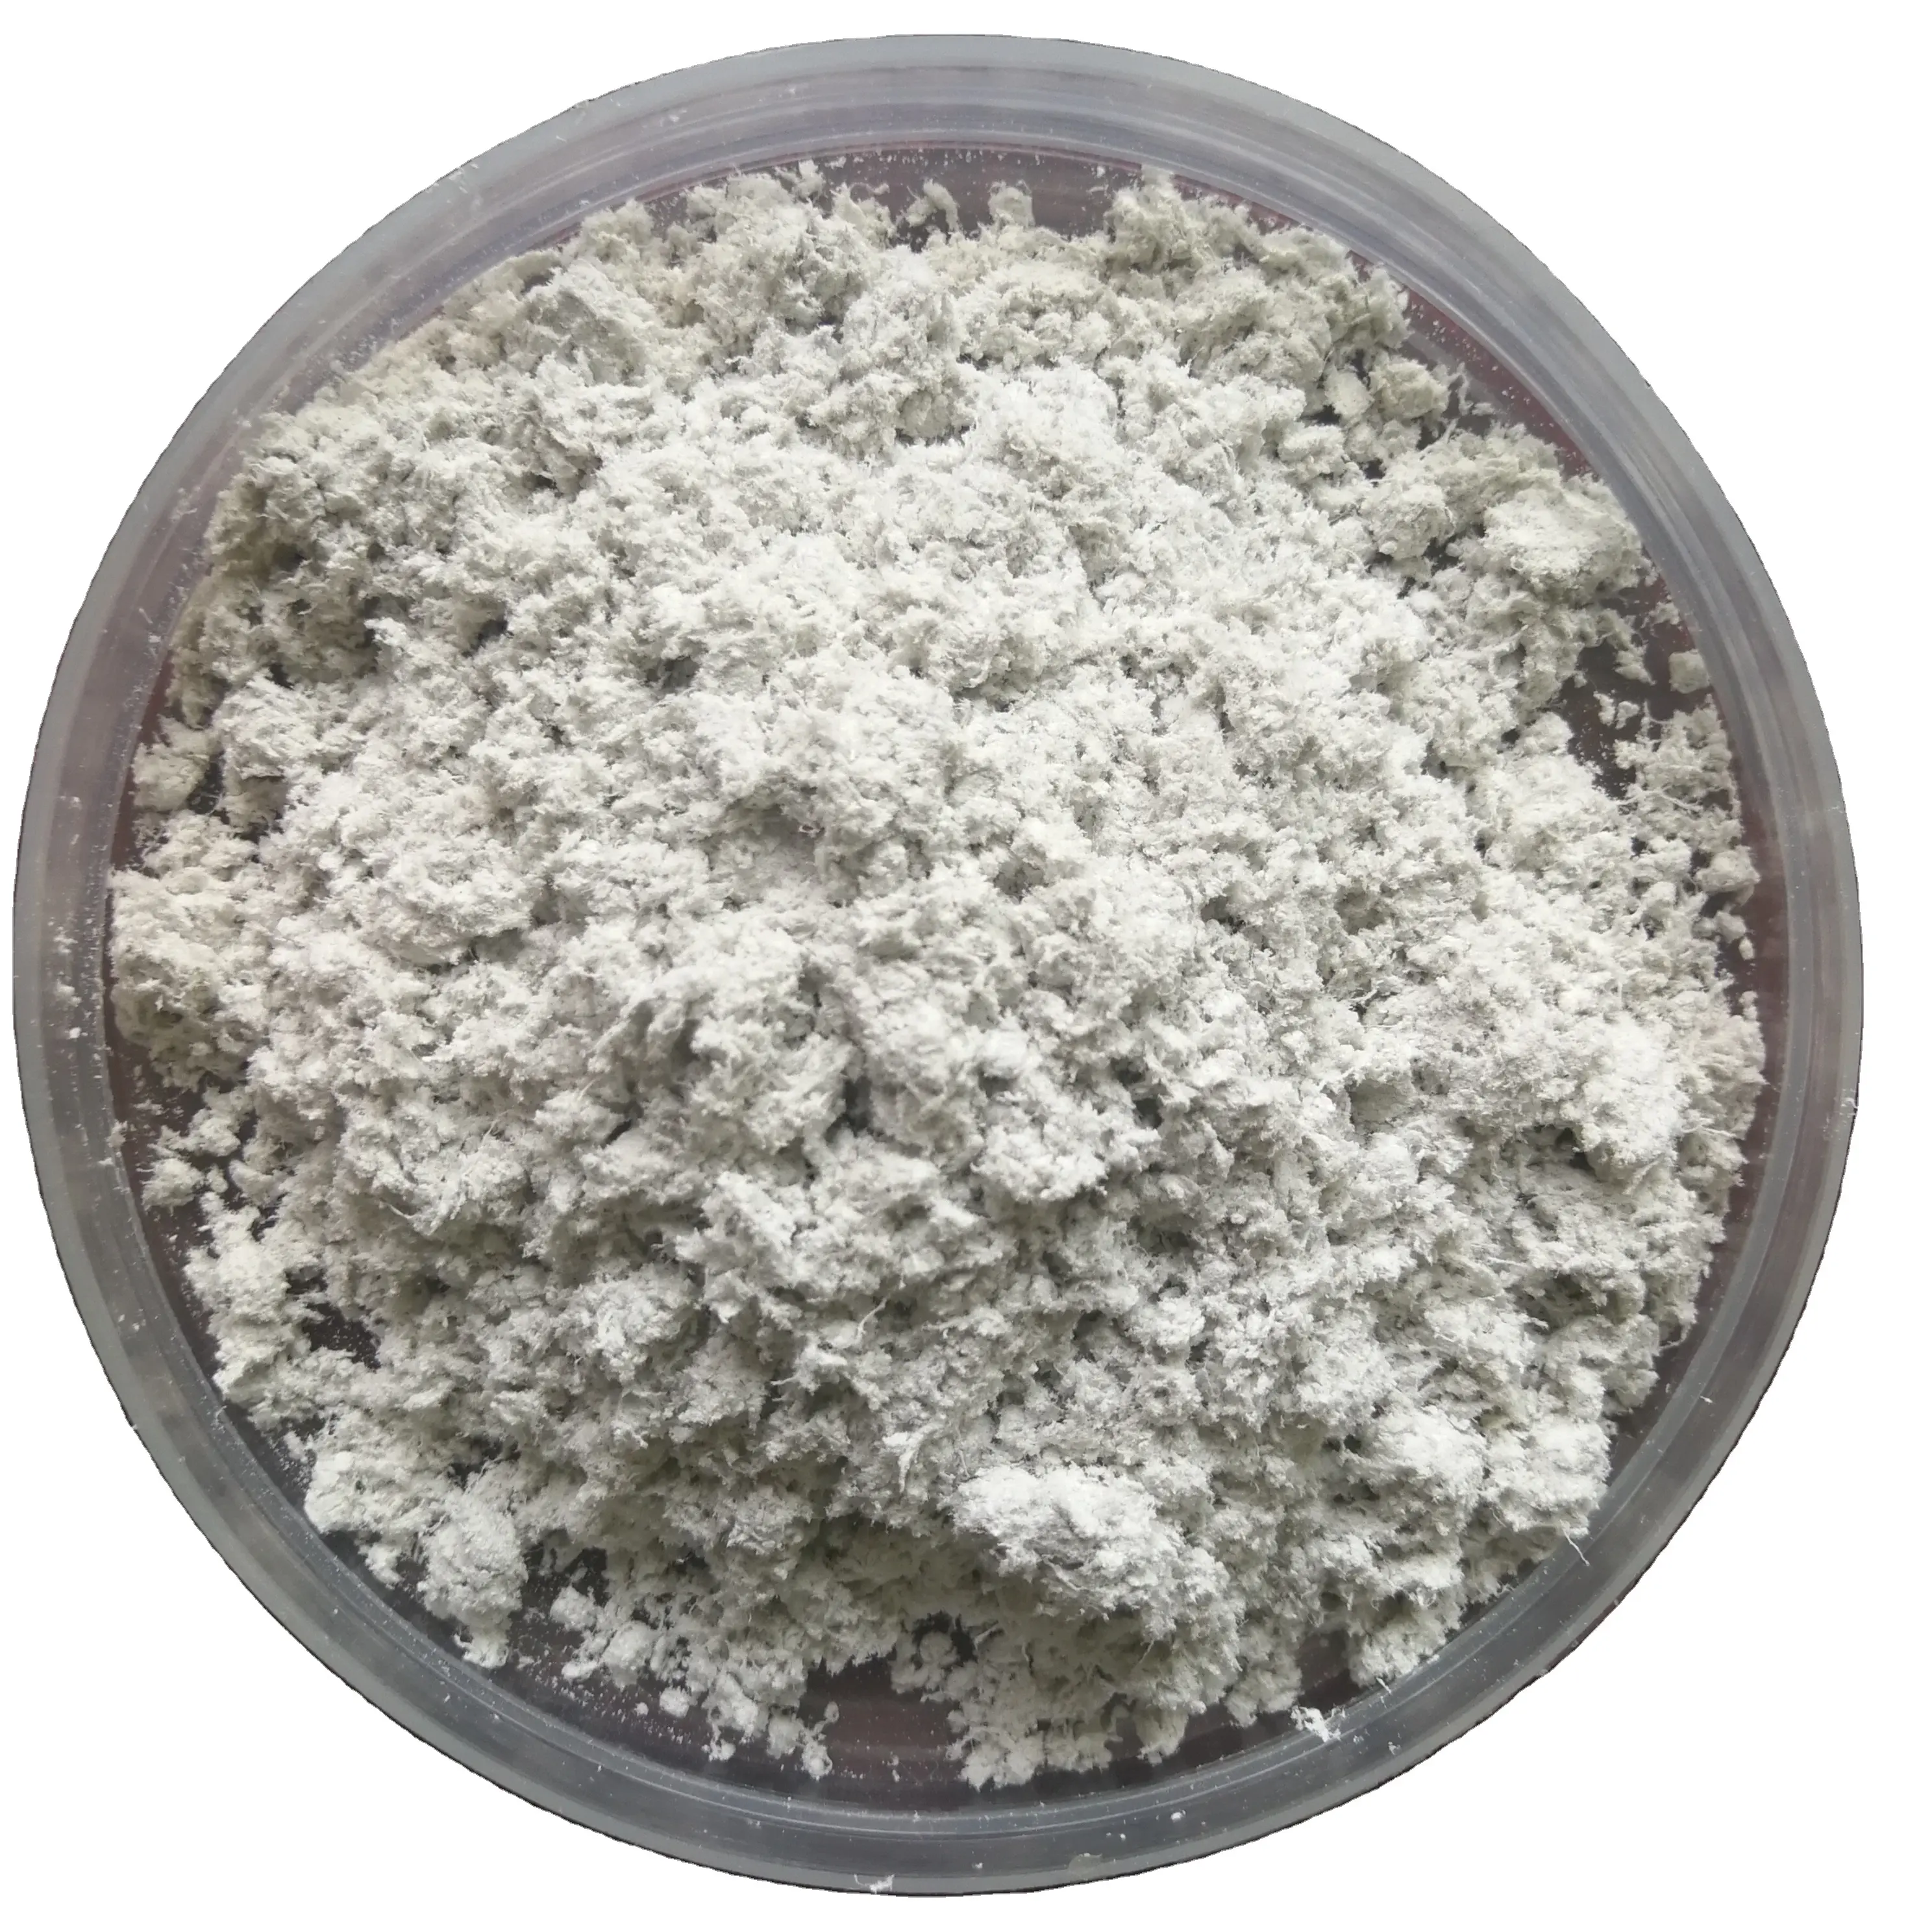 مواد احتكاك عالية ألياف سيبيوليت تستخدم لوسادات الفرامل مادة ألياف معدنية غير معدنية للبطانة